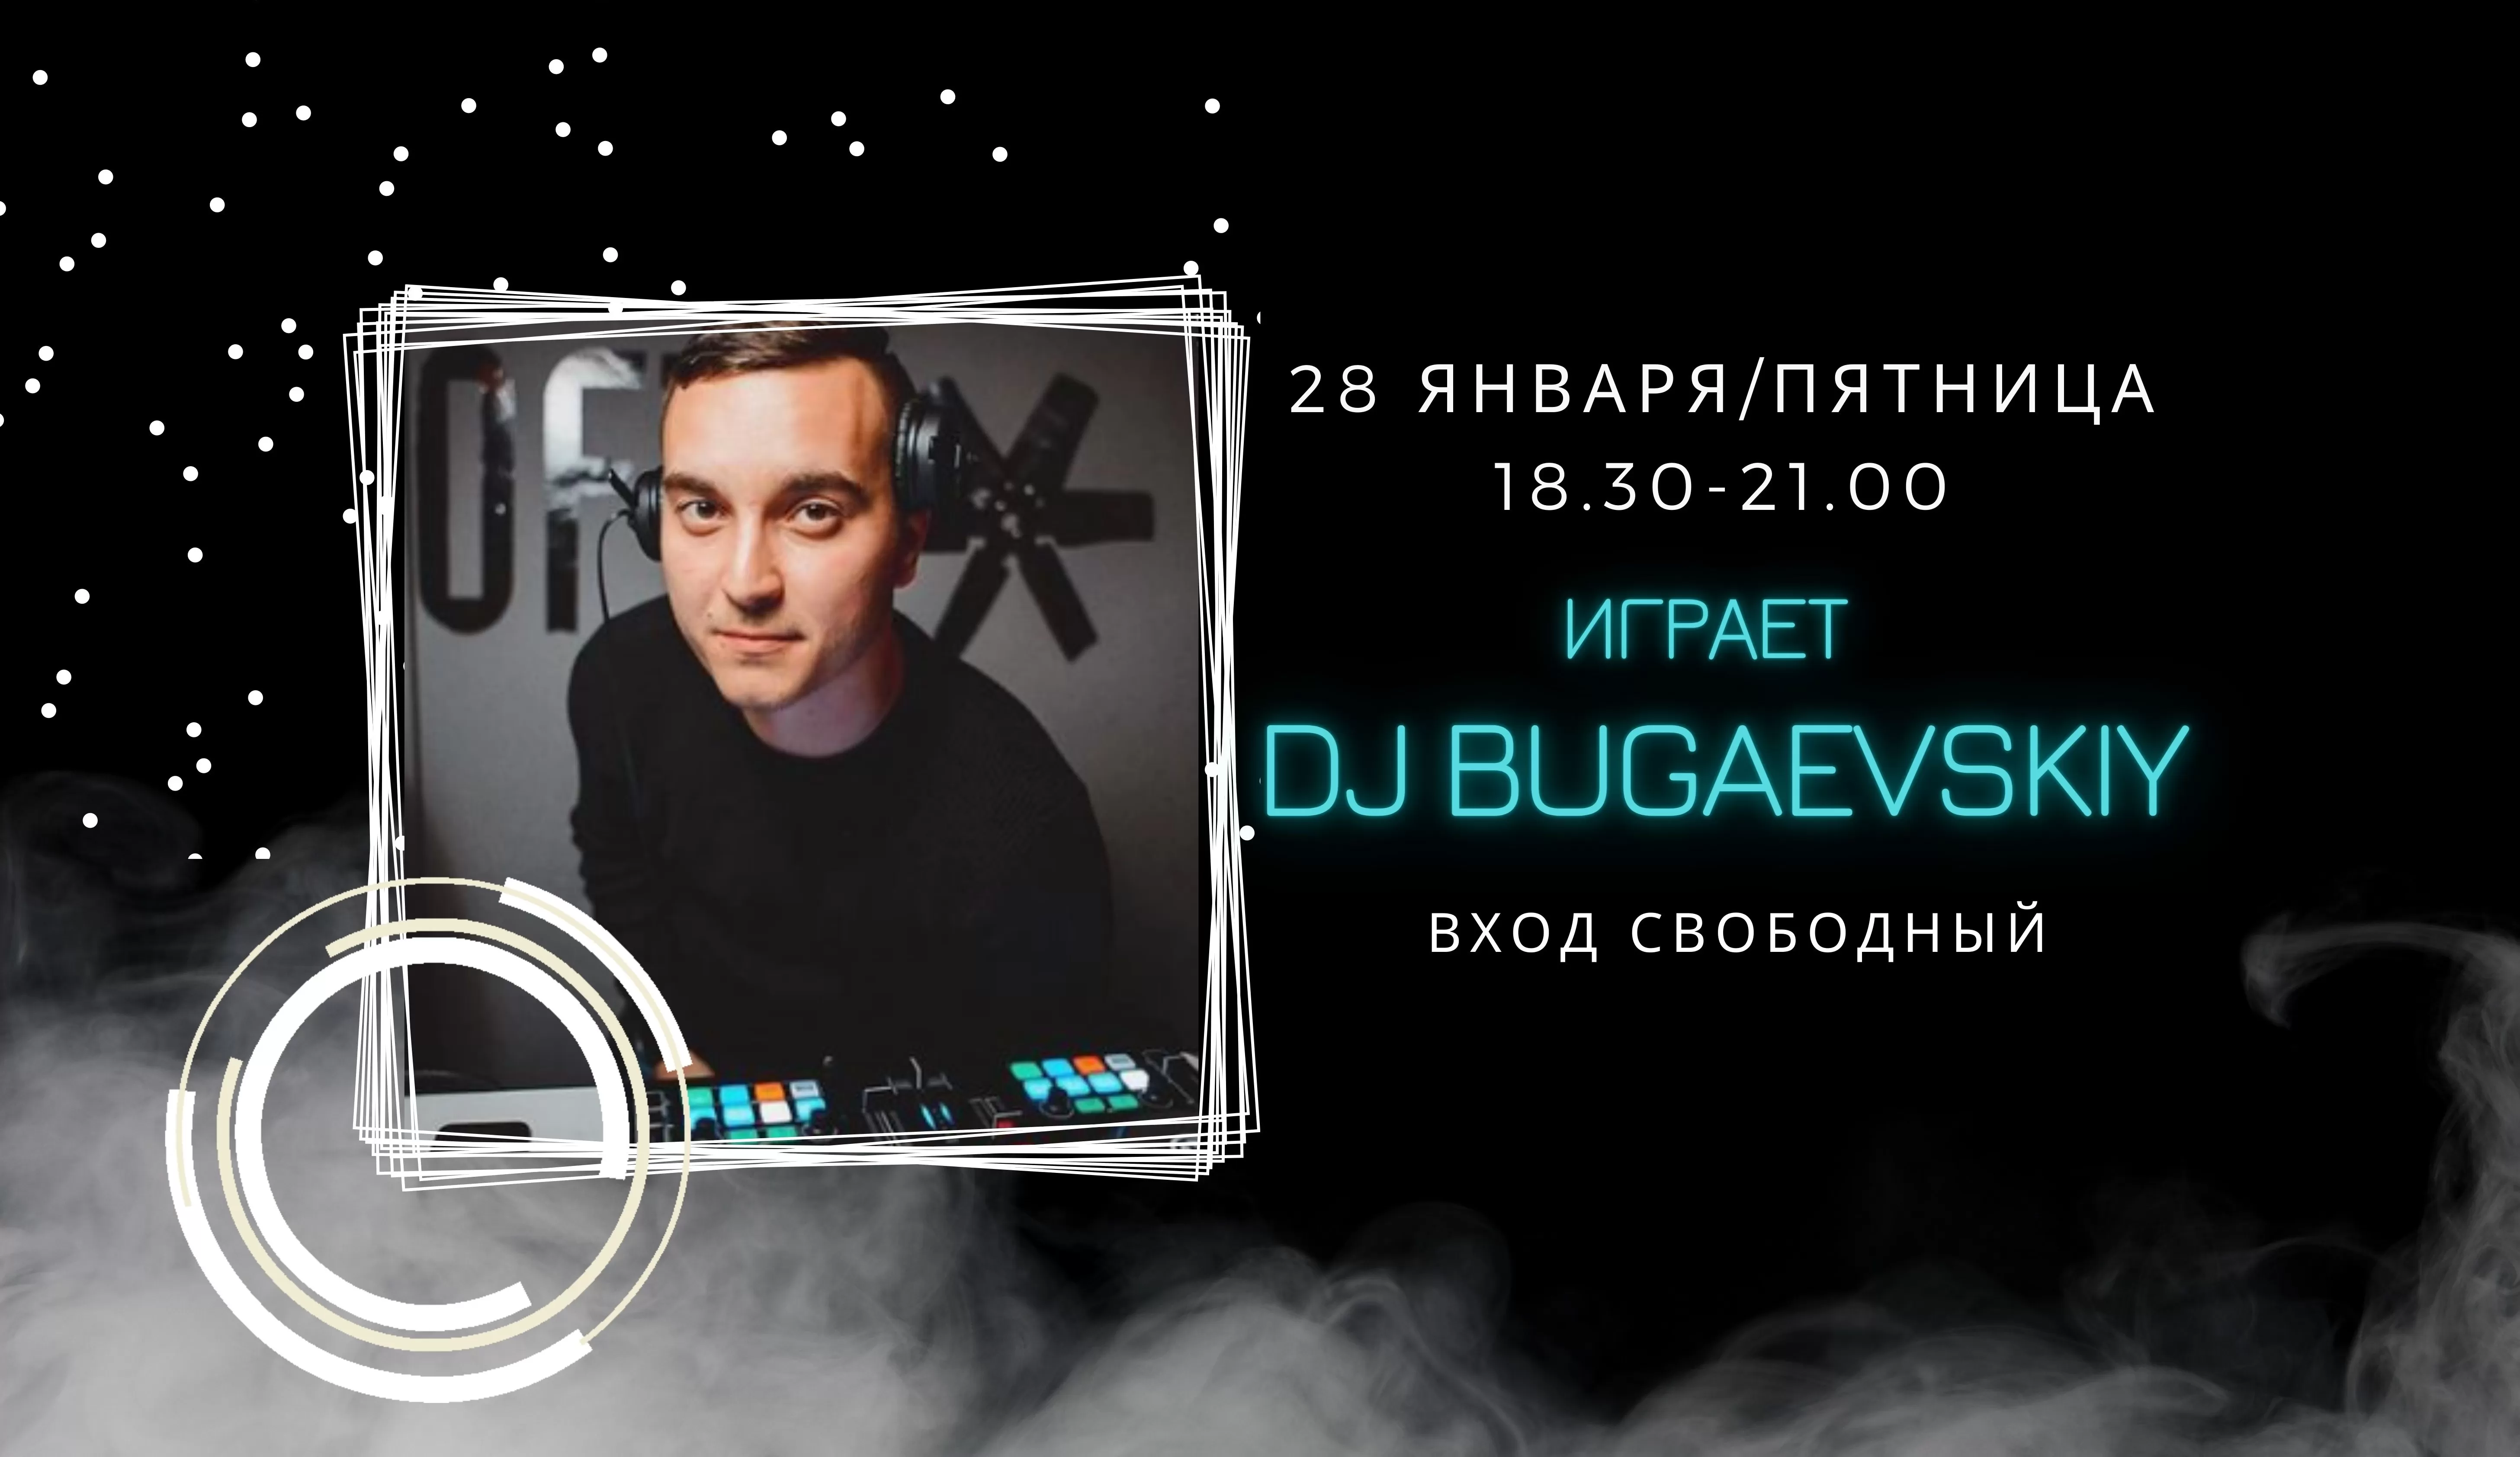 28.01.2022 На сцене DJ Bugaevskiy